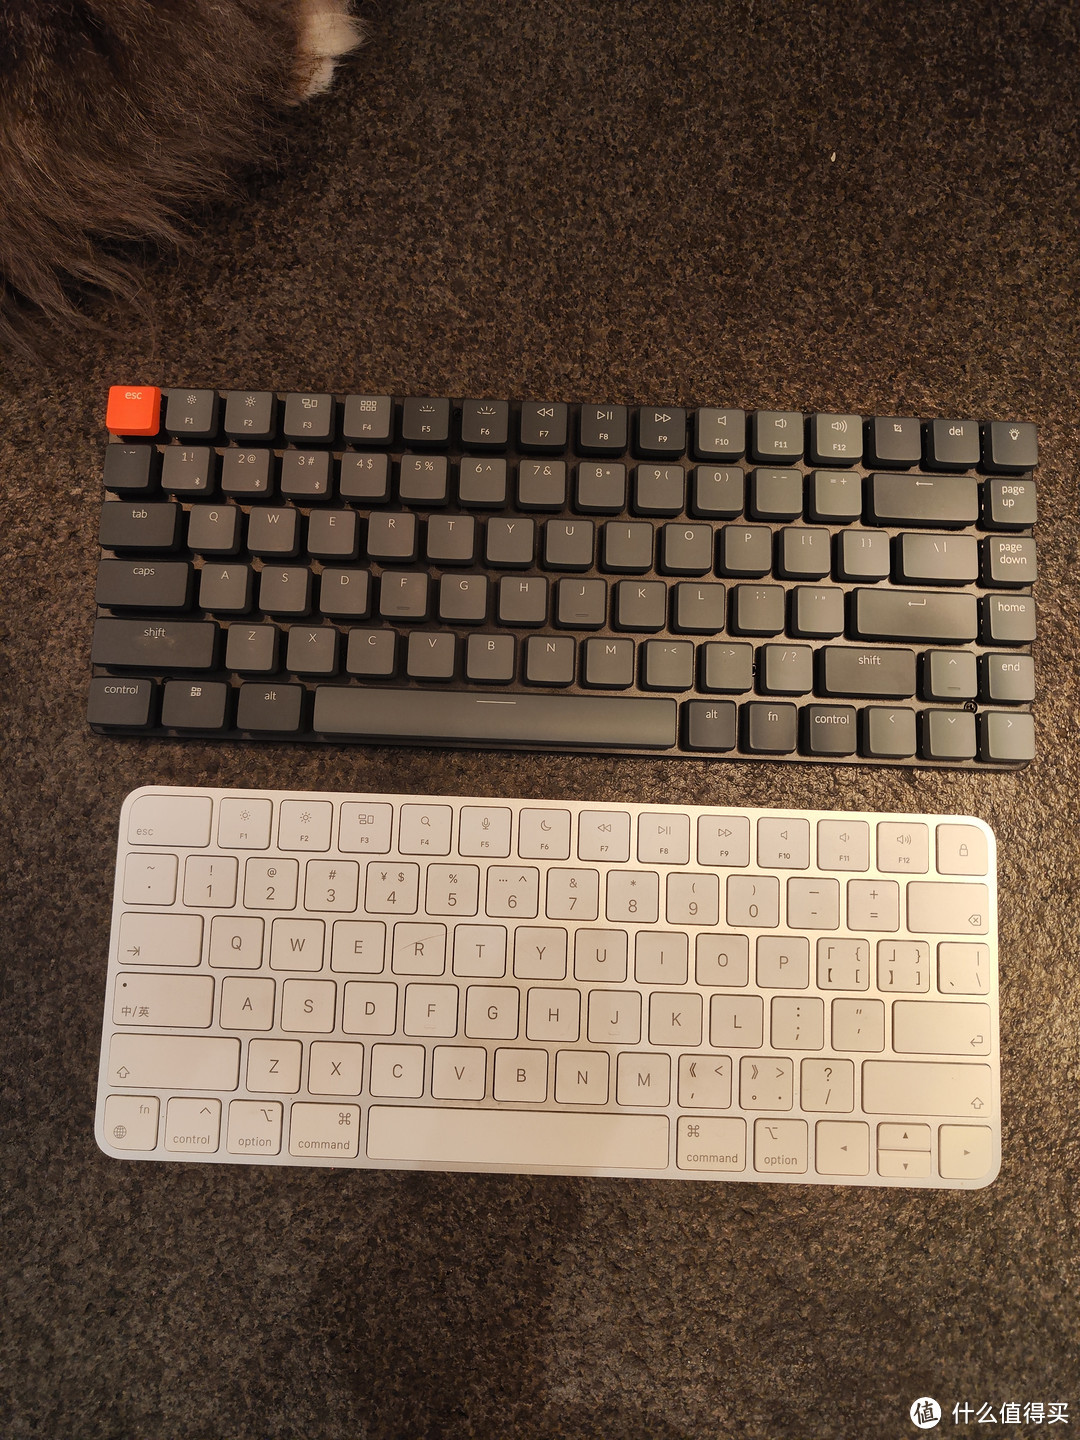 大小就比magic keyboard大一点点，但是这个键程和按键大小，手感上绝对比mkb好非常非常多。mkb多机器切换实在是痛苦！！！！